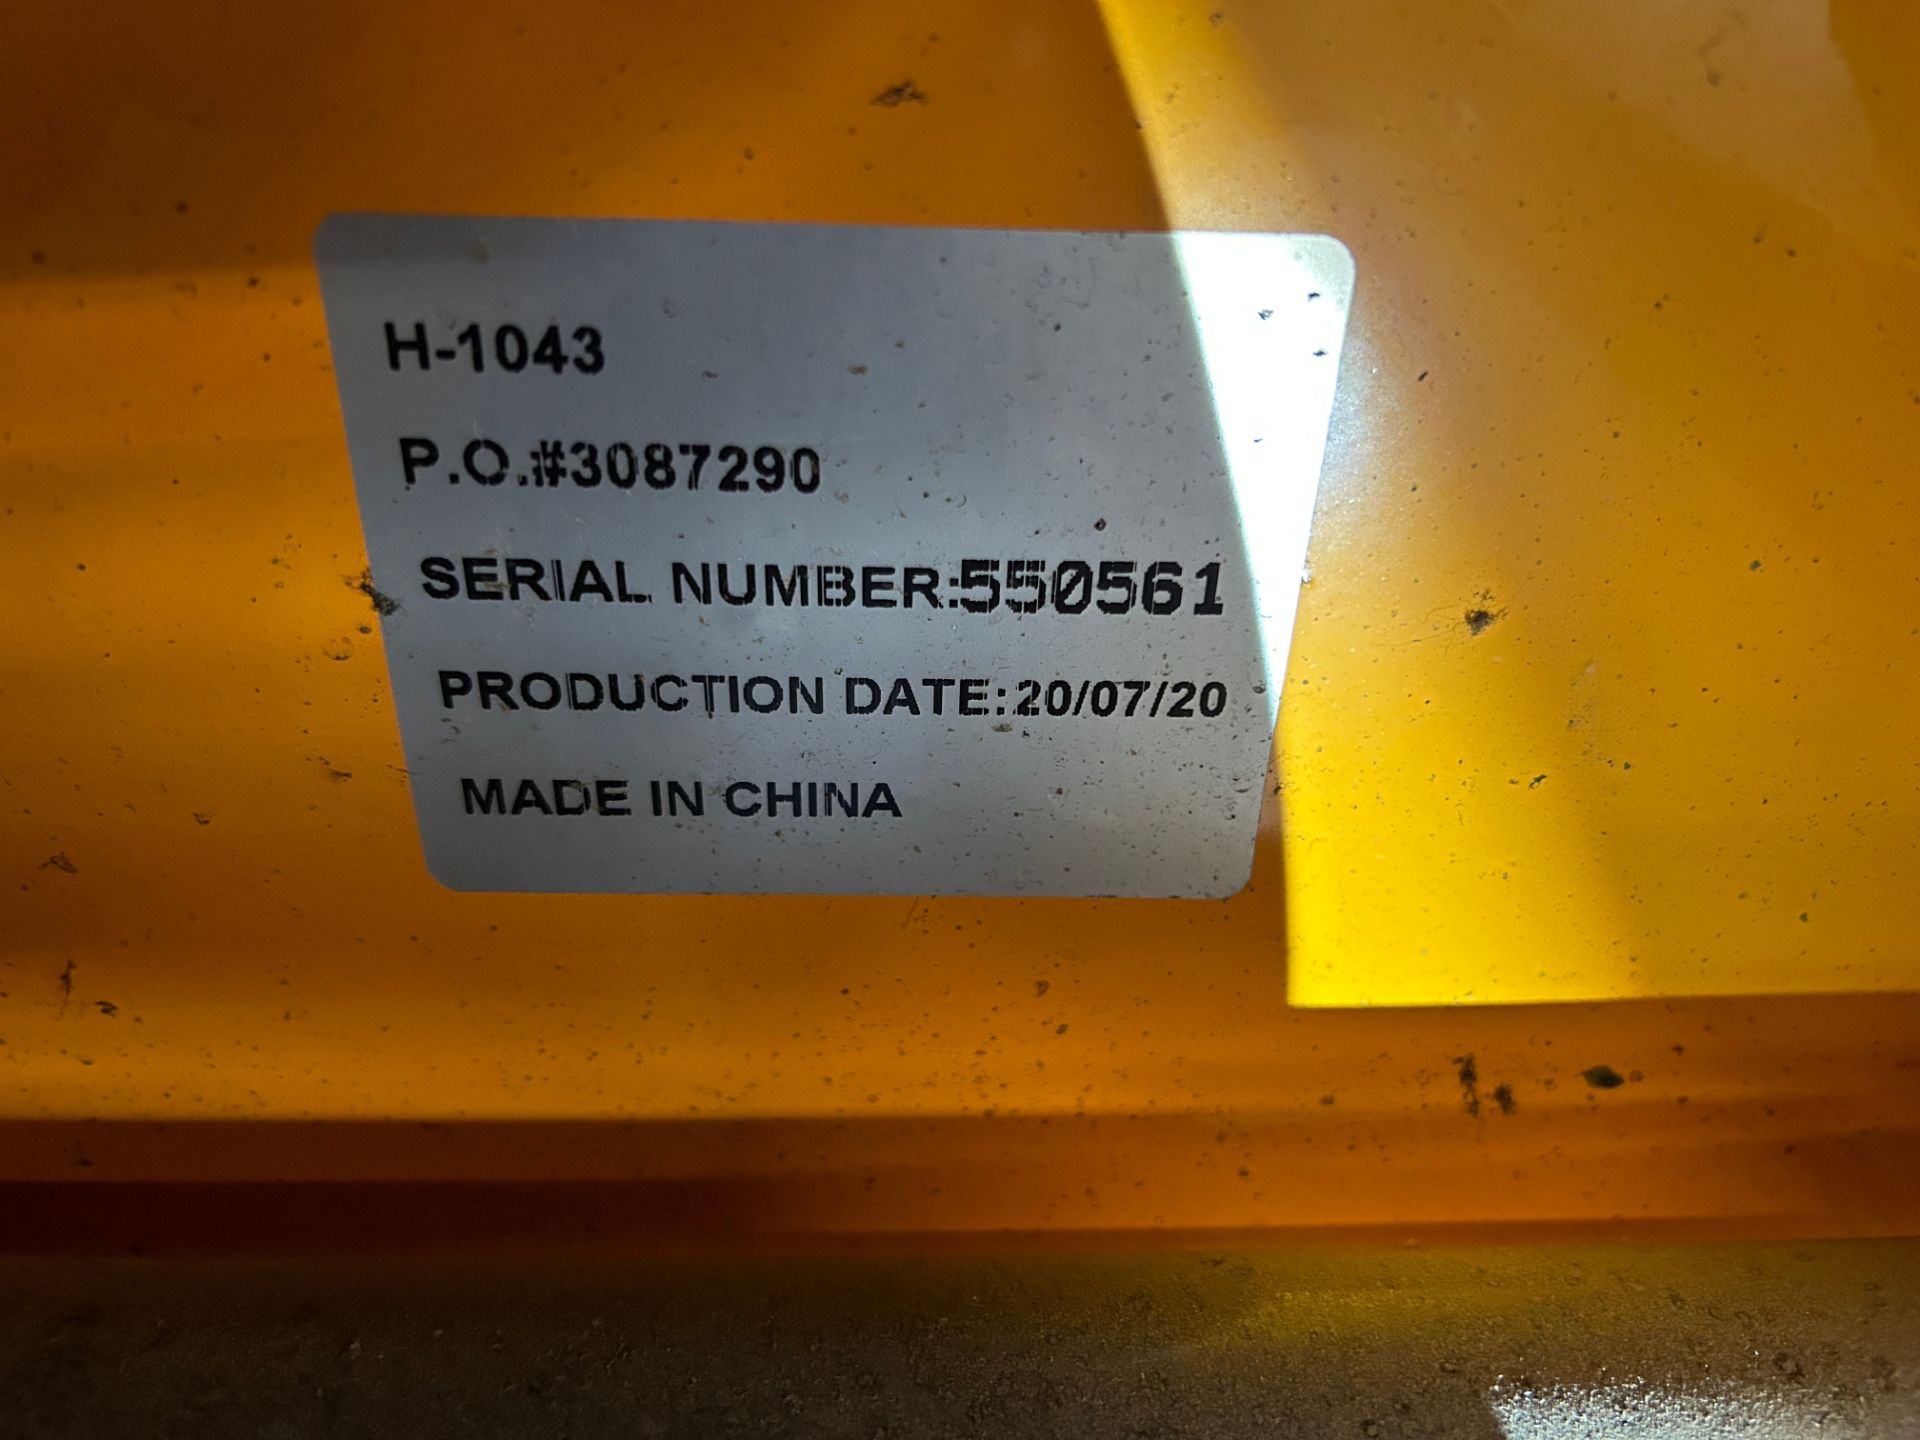 Uline Mdl H-1043, 5,500 Pound Capacity Manual Pallet Jack, 48 x 27 Forks S/N# 550561 (2020) - Image 3 of 3